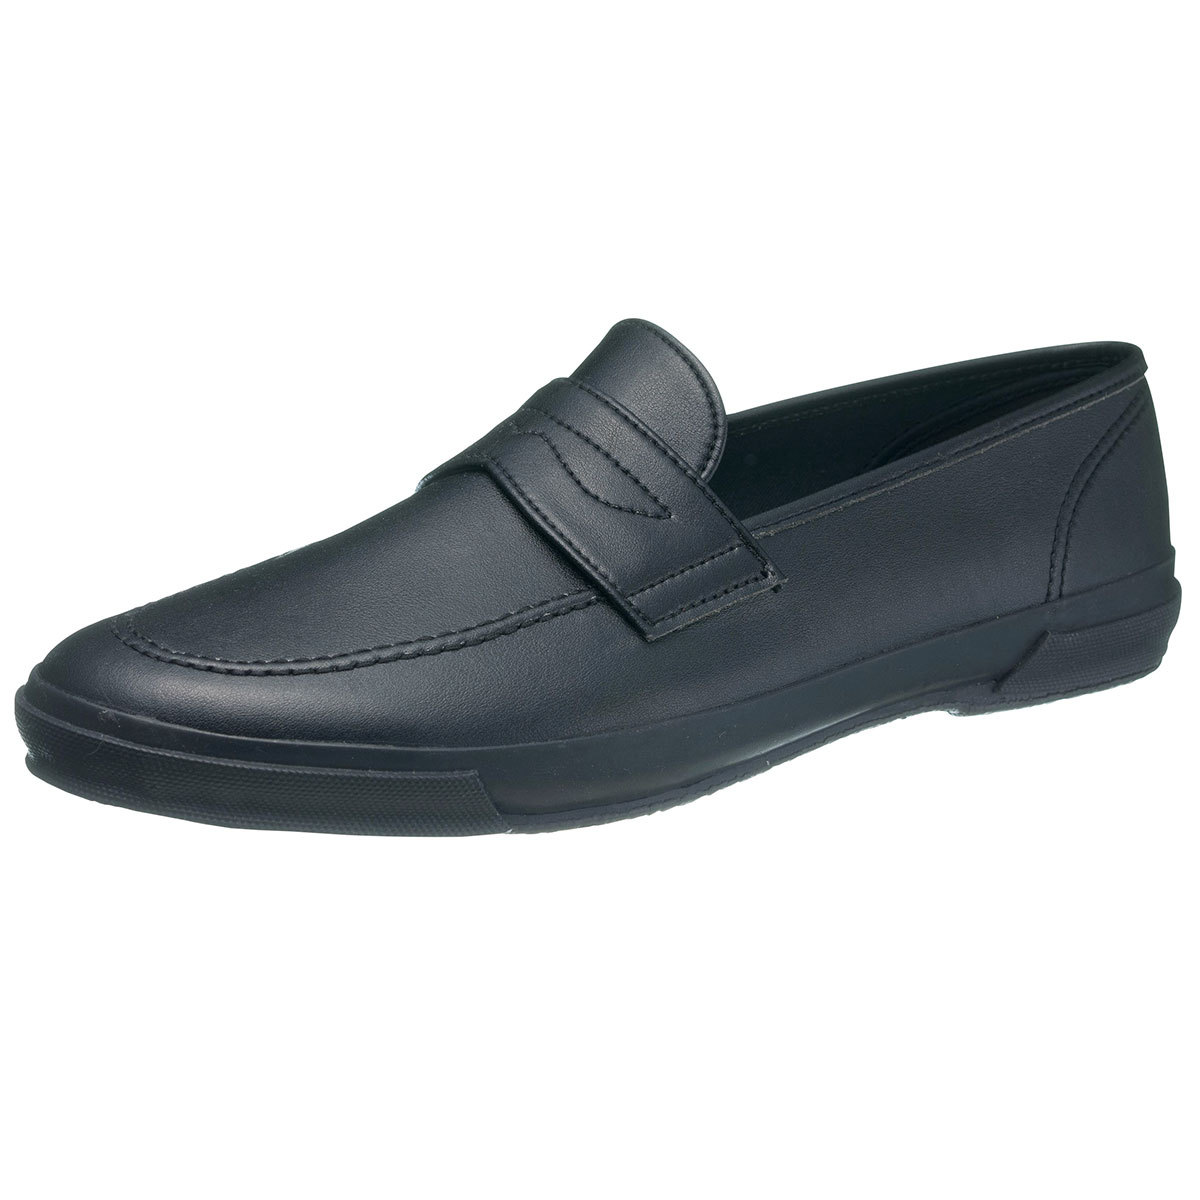 コインローファー メンズ 学生 洗える 靴 履きやすい 歩きやすい 痛くない シンプル ジュニア シューズ フォーマル 小さいサイズ 大きいサイズ 黒  ブラック M02